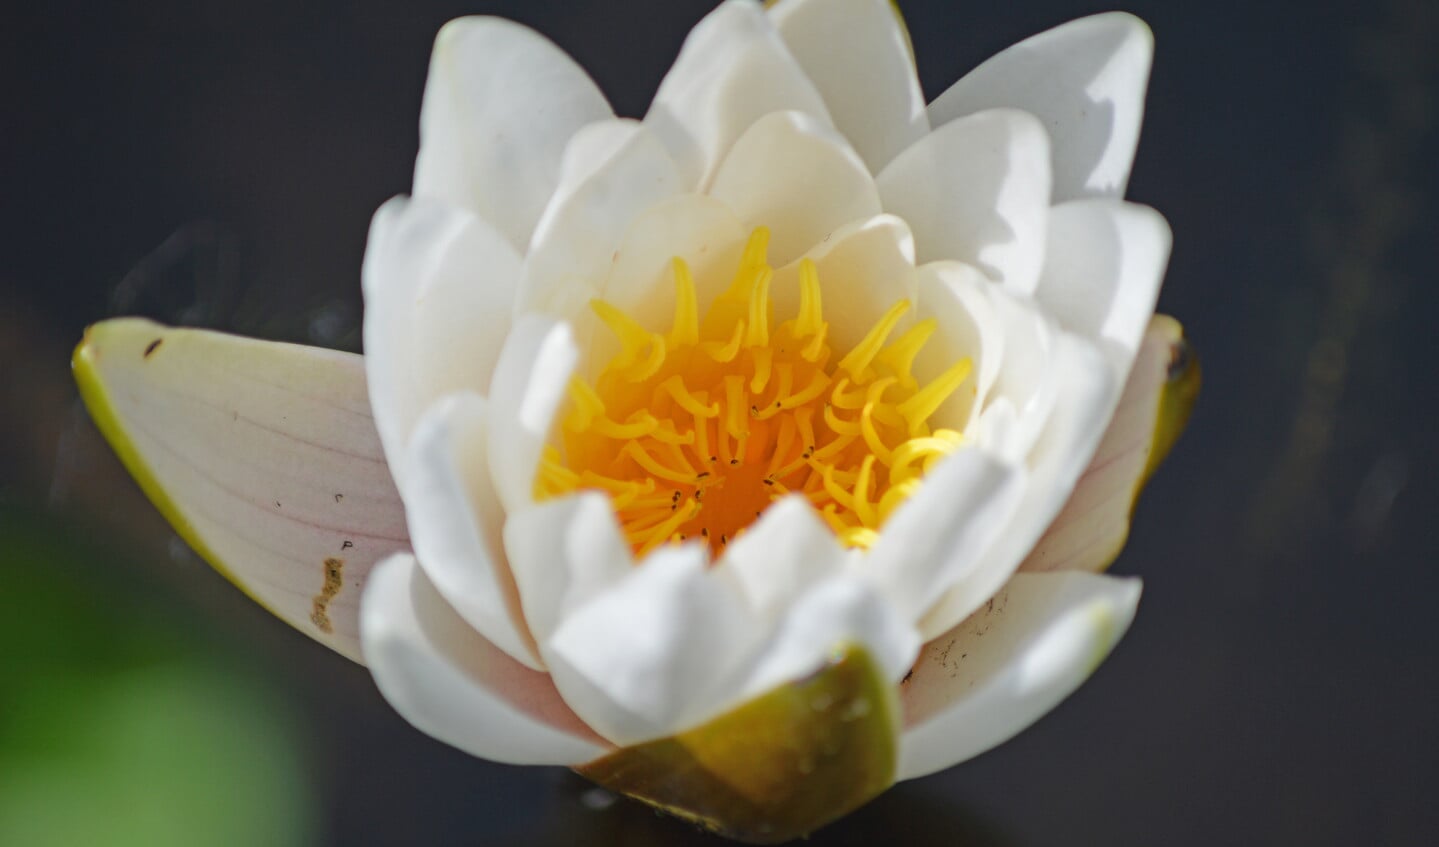 De bloemen van de waterlelie bieden alleen stuifmeel.